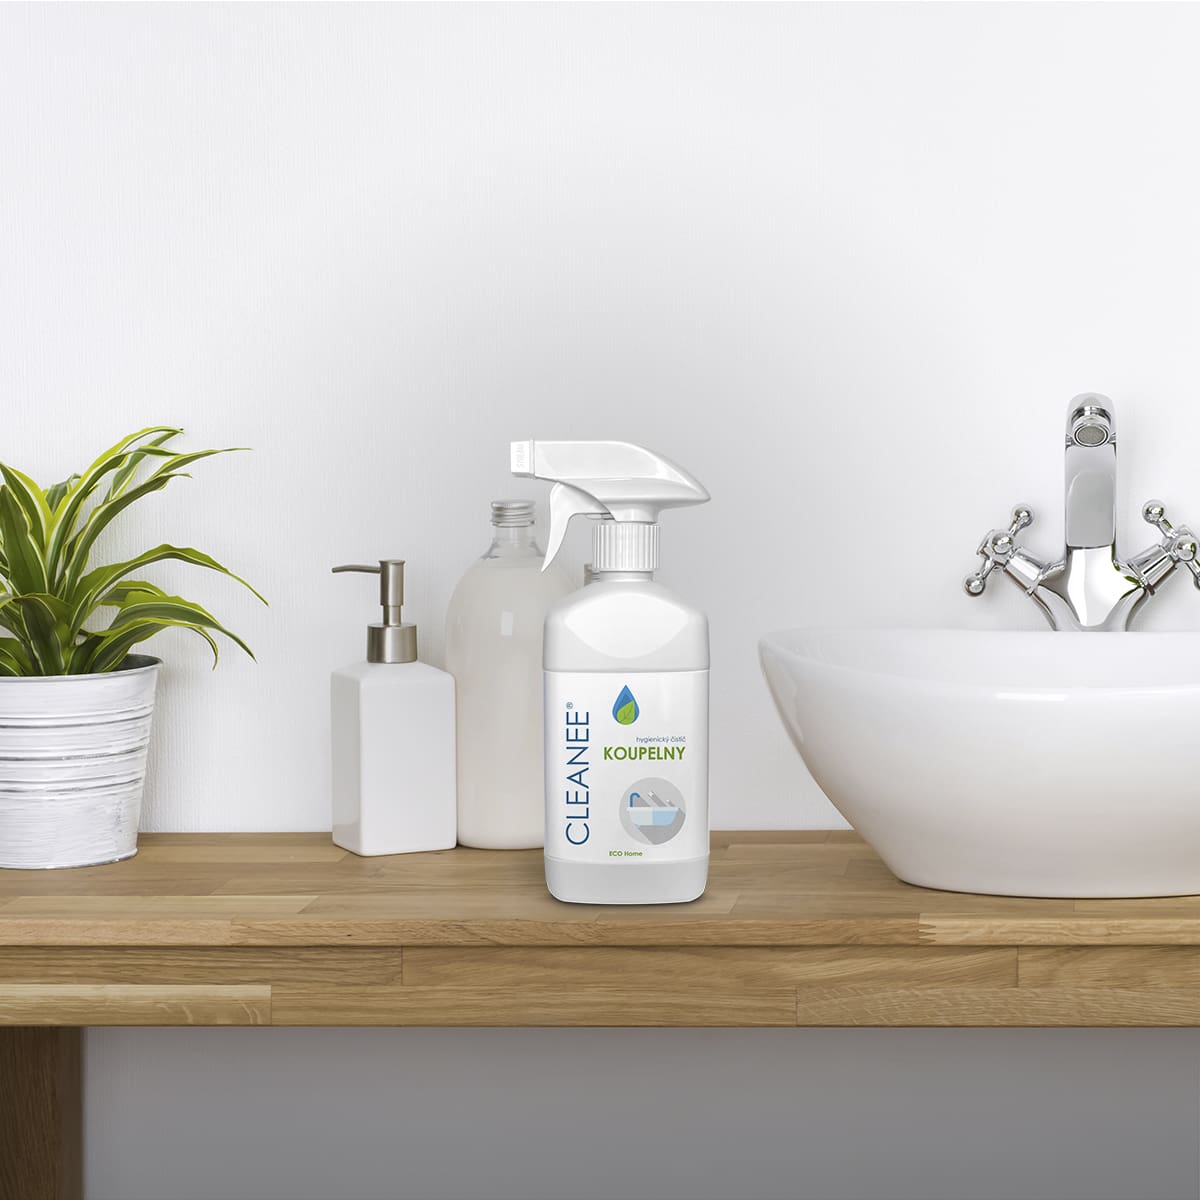 Přírodní čistití prostředek na koupelny s dlouhodobým hygienickým účinkem.